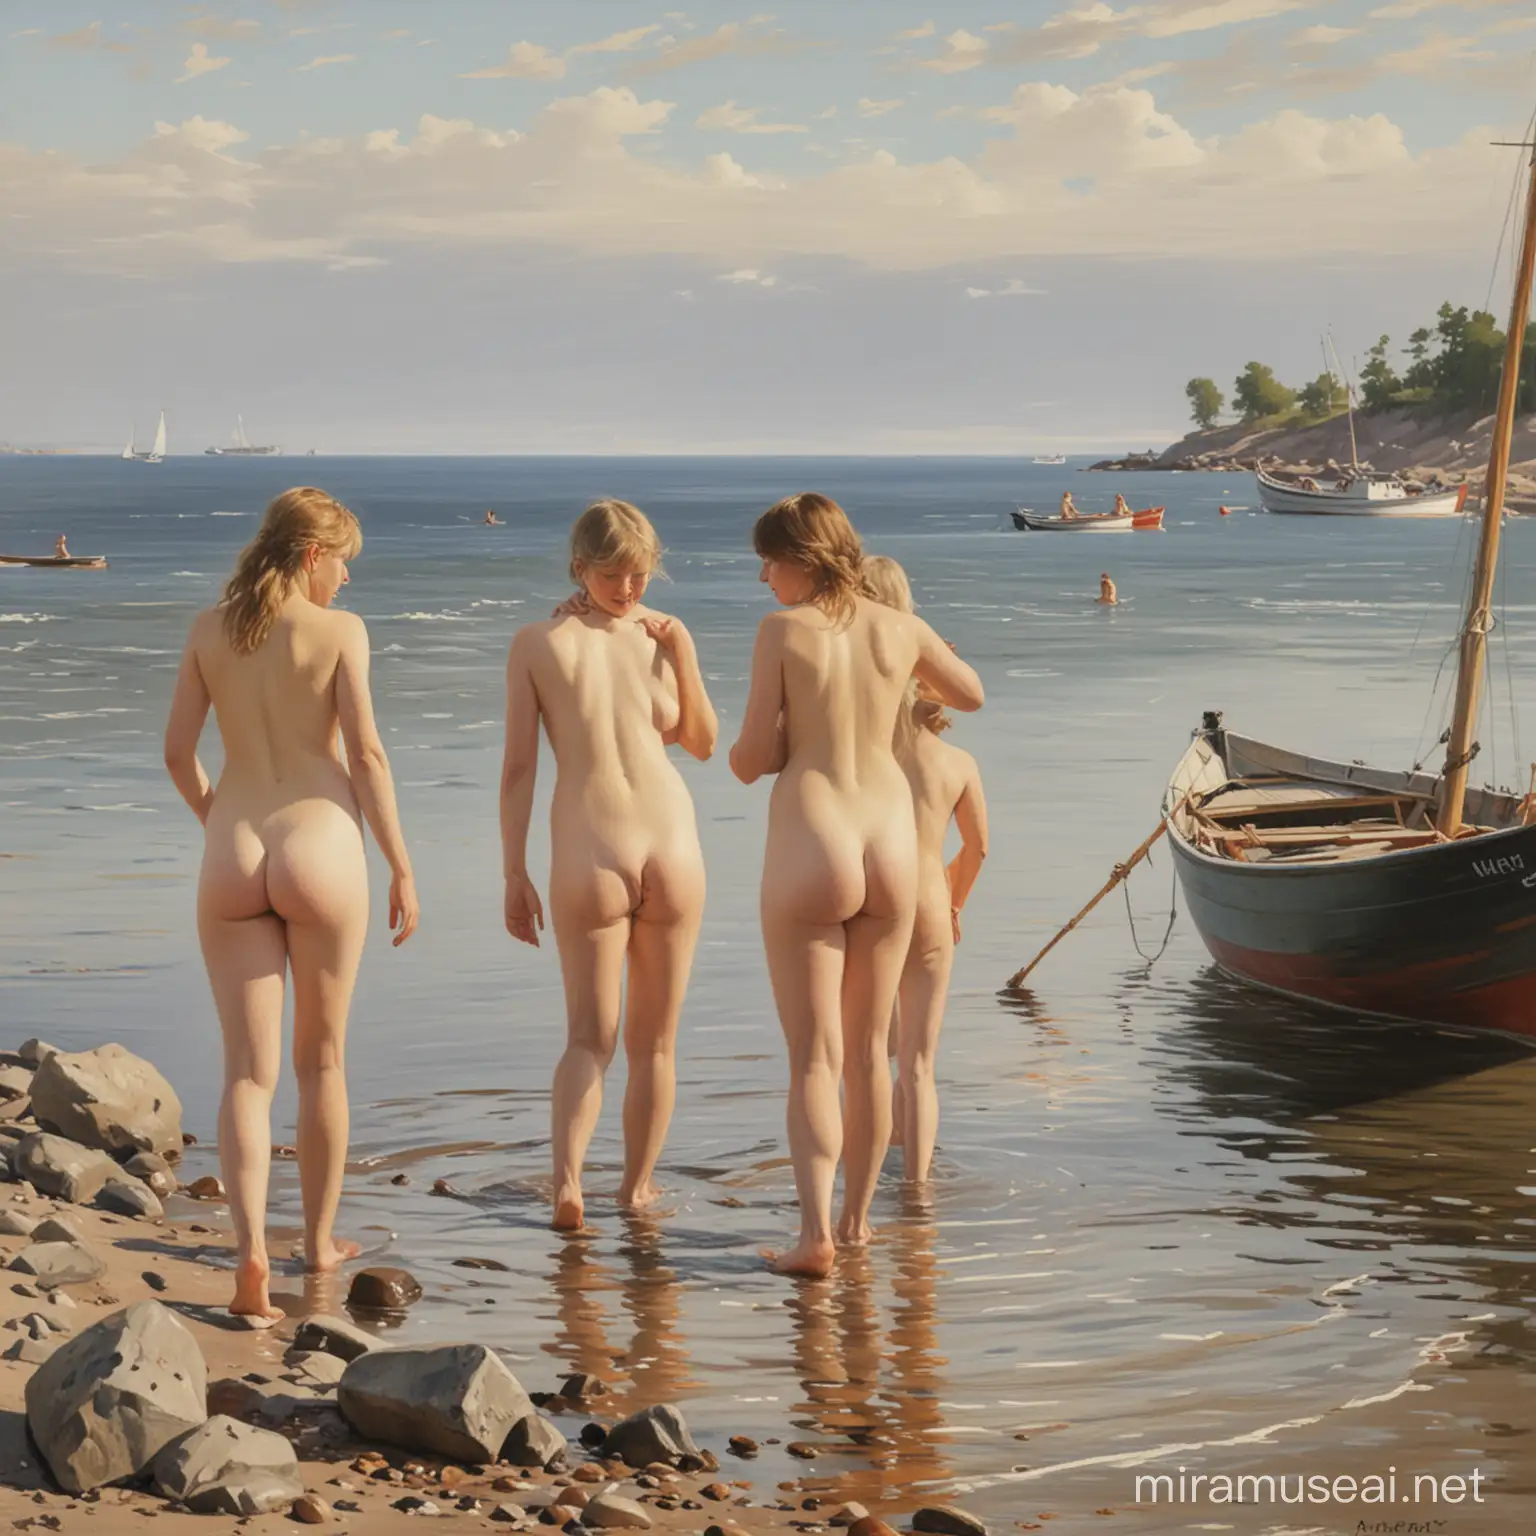 картина ,в стиле художника Андерс Цорн купаются девушки обнаженные , на берегу, в дали лодки.